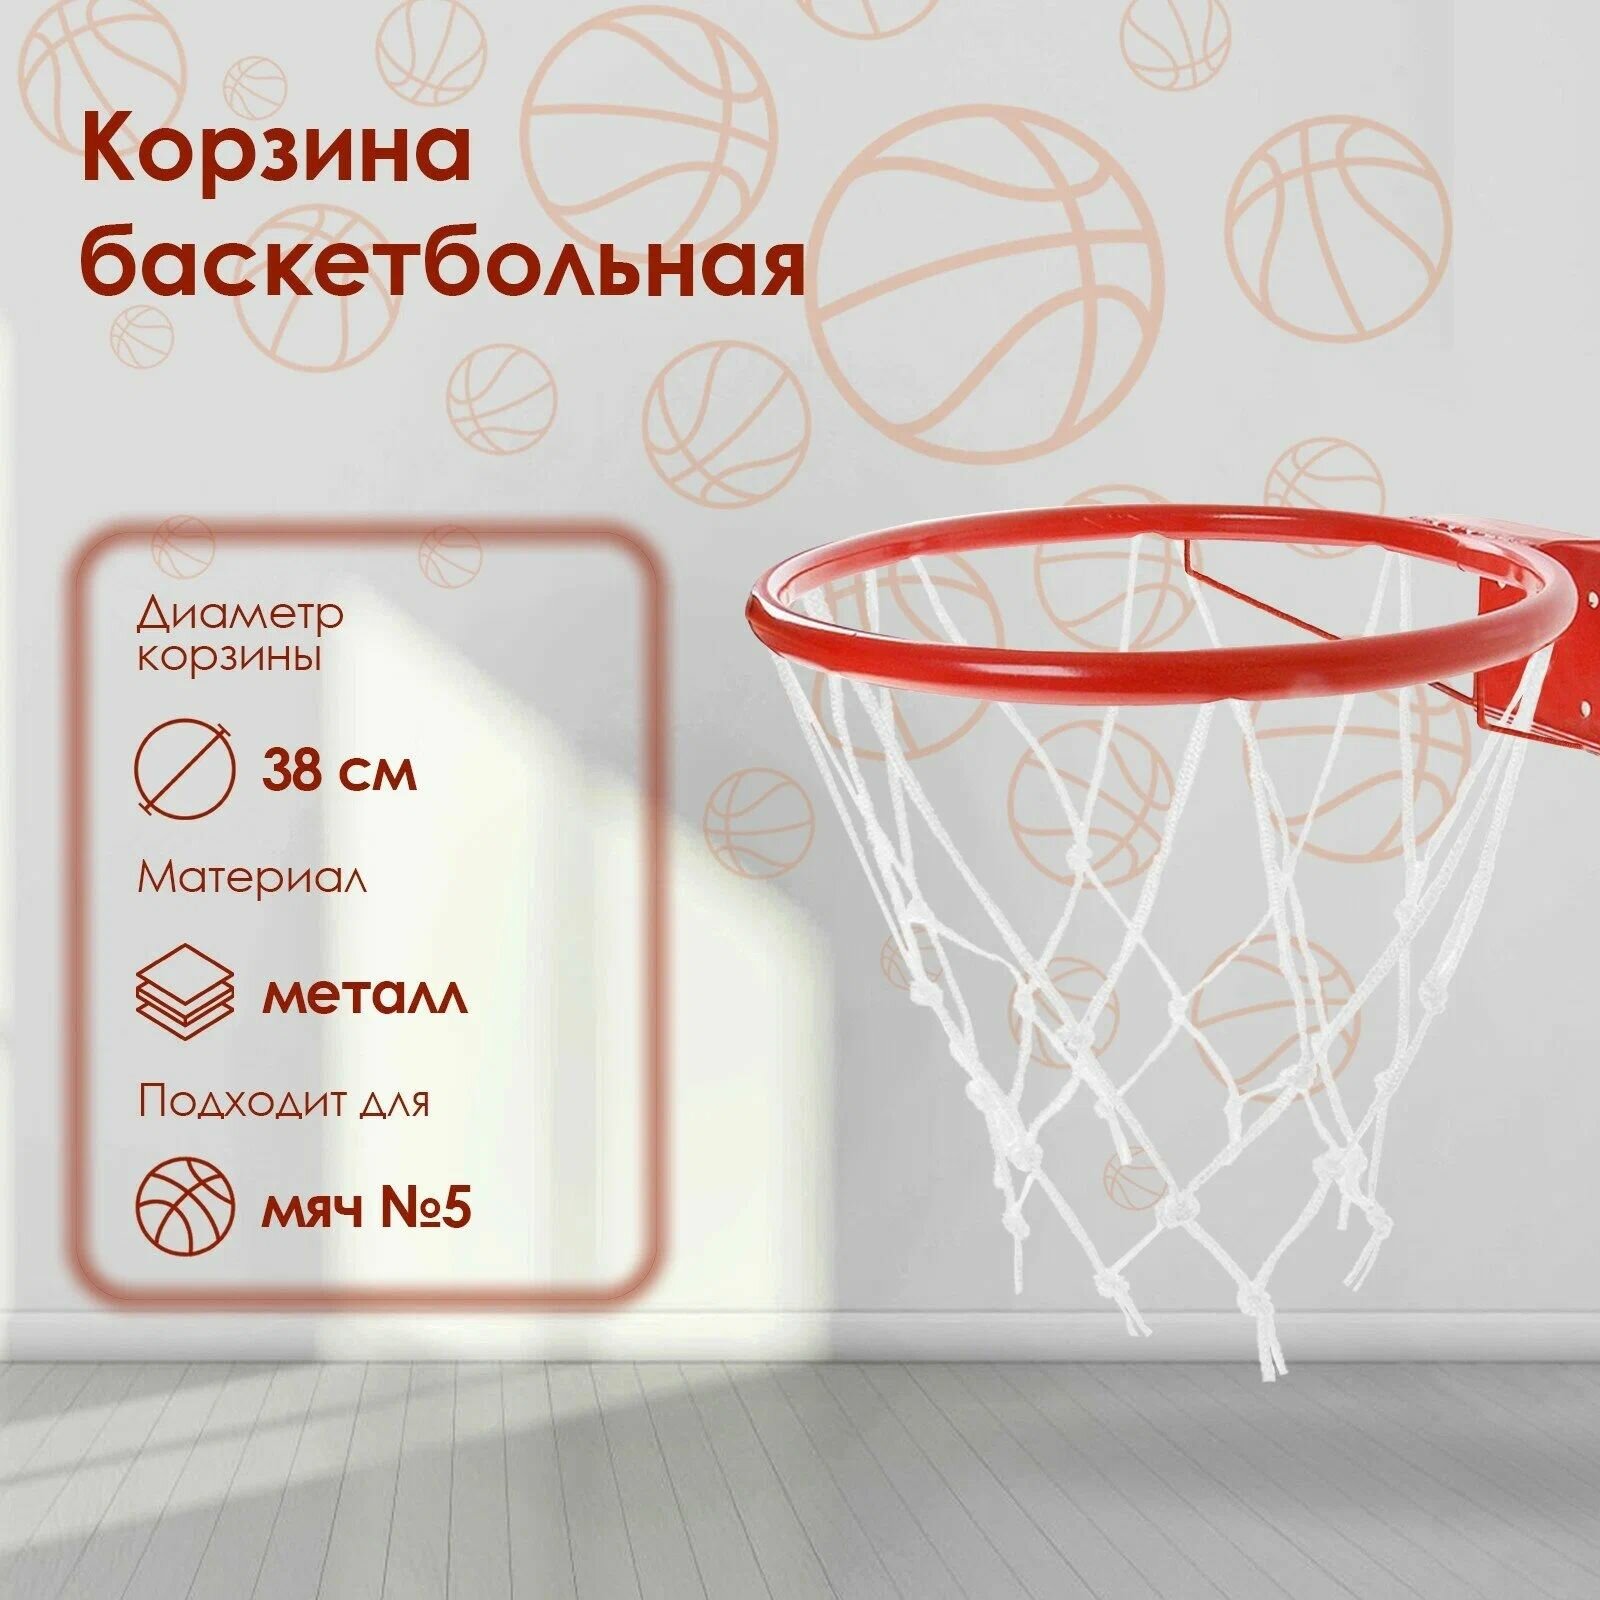 Корзина баскетбольная №5 Люкс, диаметр 380 мм, с сеткой и упором